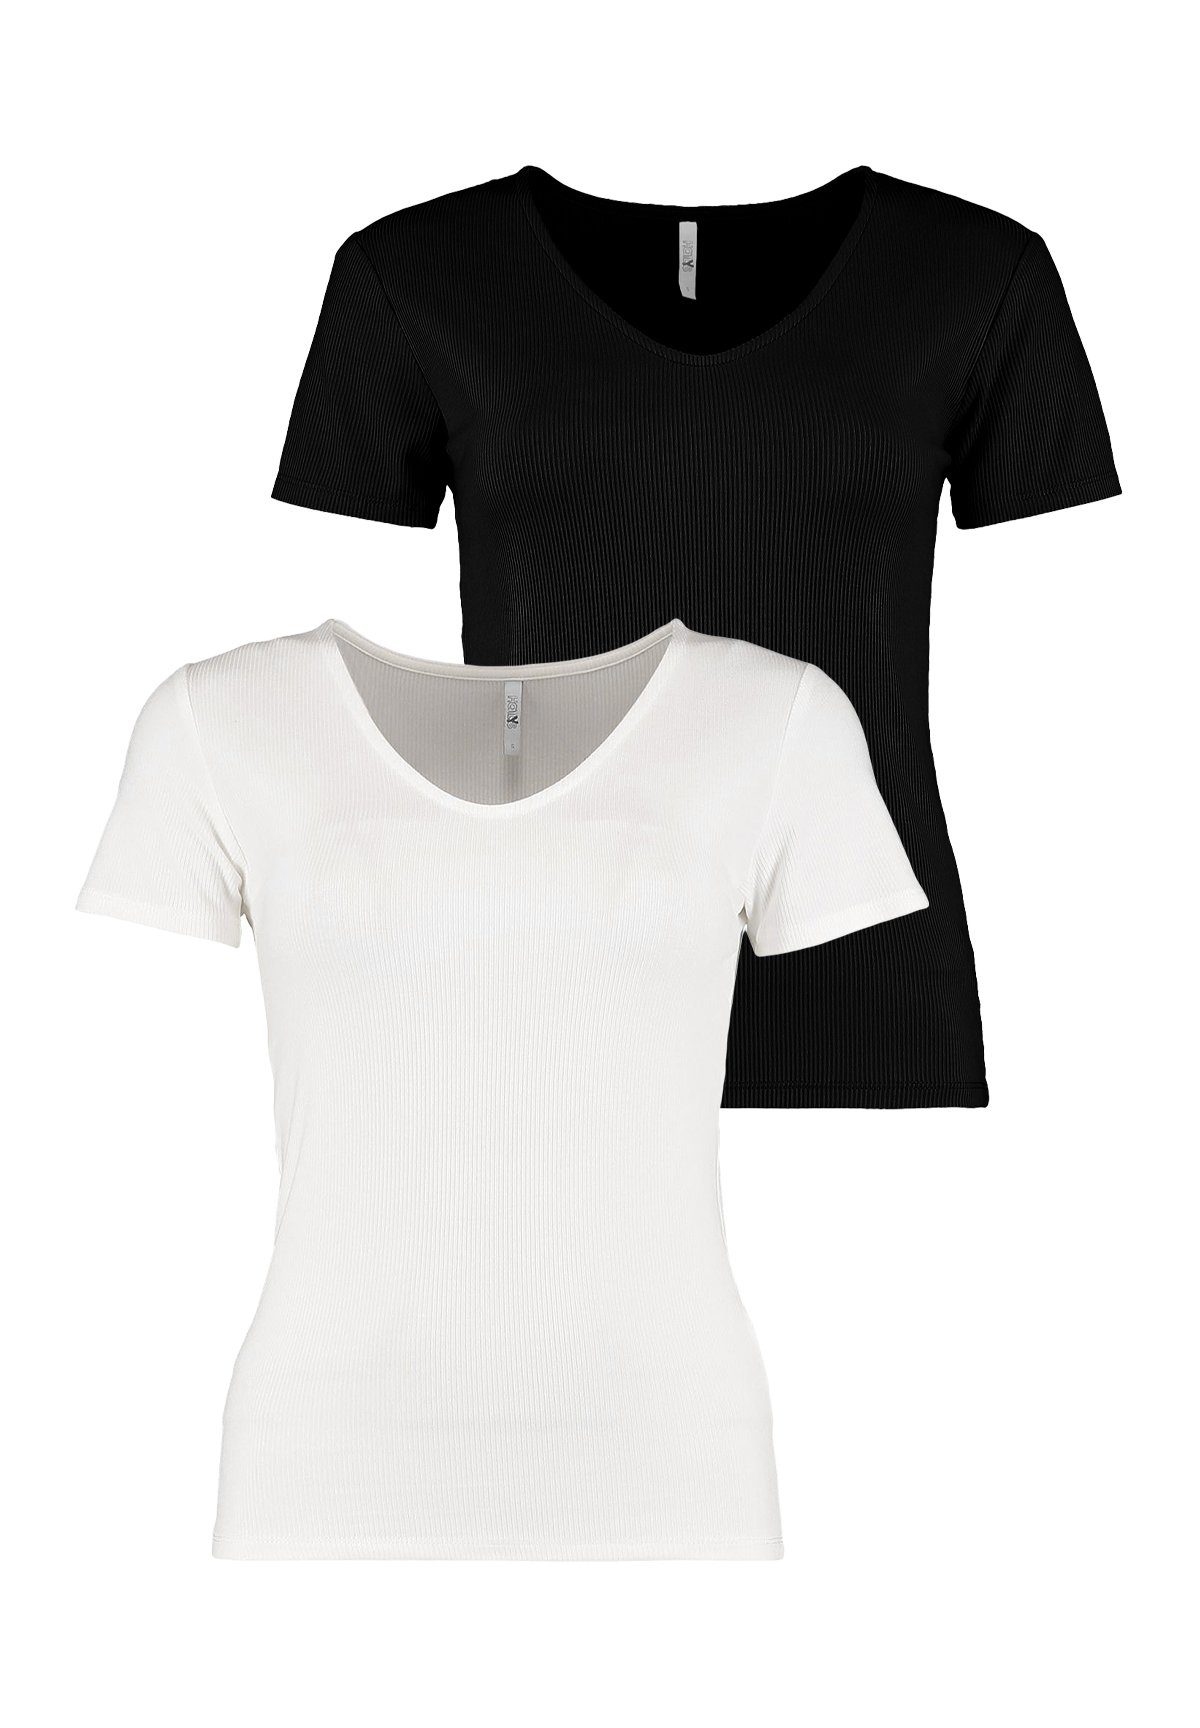 HaILY\'S T-Shirt 2-er Pack (2-tlg) Schwarz-Weiß Stretch Oberteil T-Shirt Geripptes in 6916 Top